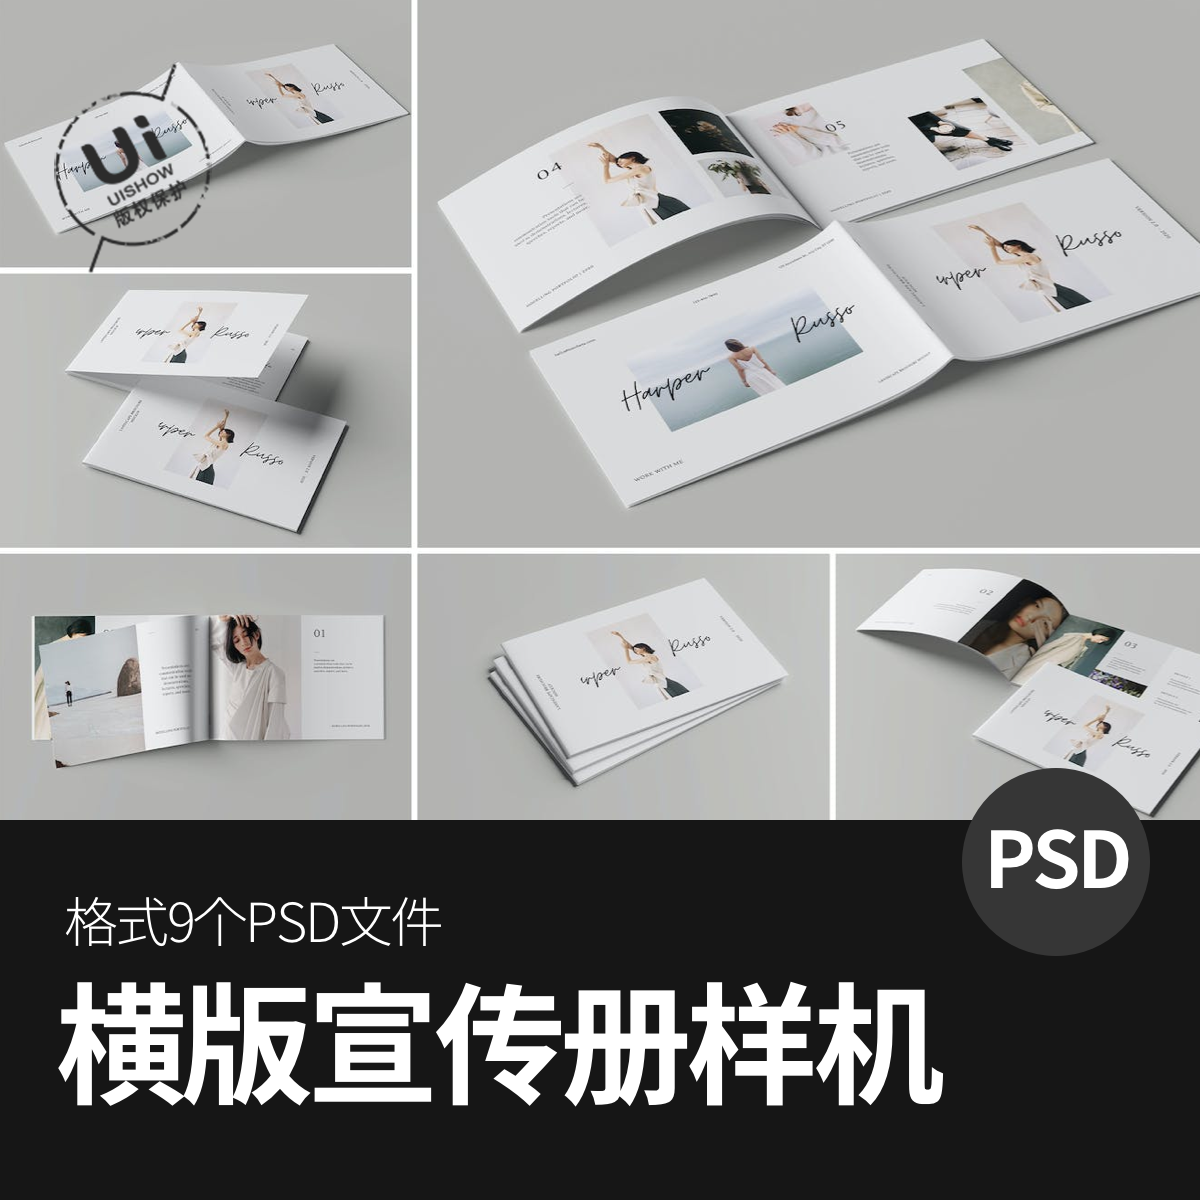 横版简约公司企业宣传册画册vi智能展示贴图样机模板psd设计素材